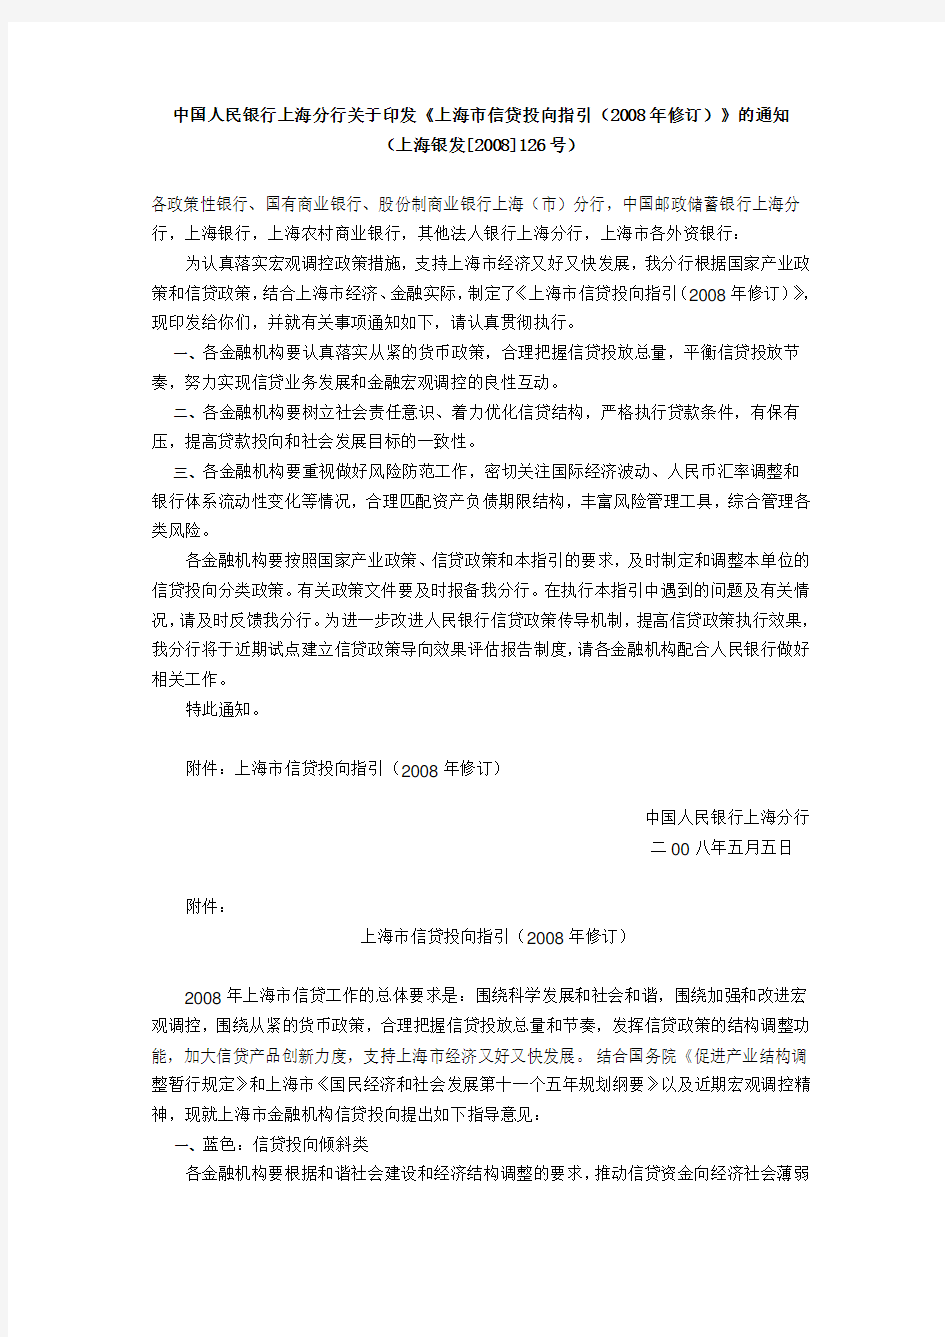 上海市信贷投向指引(2008年修订)